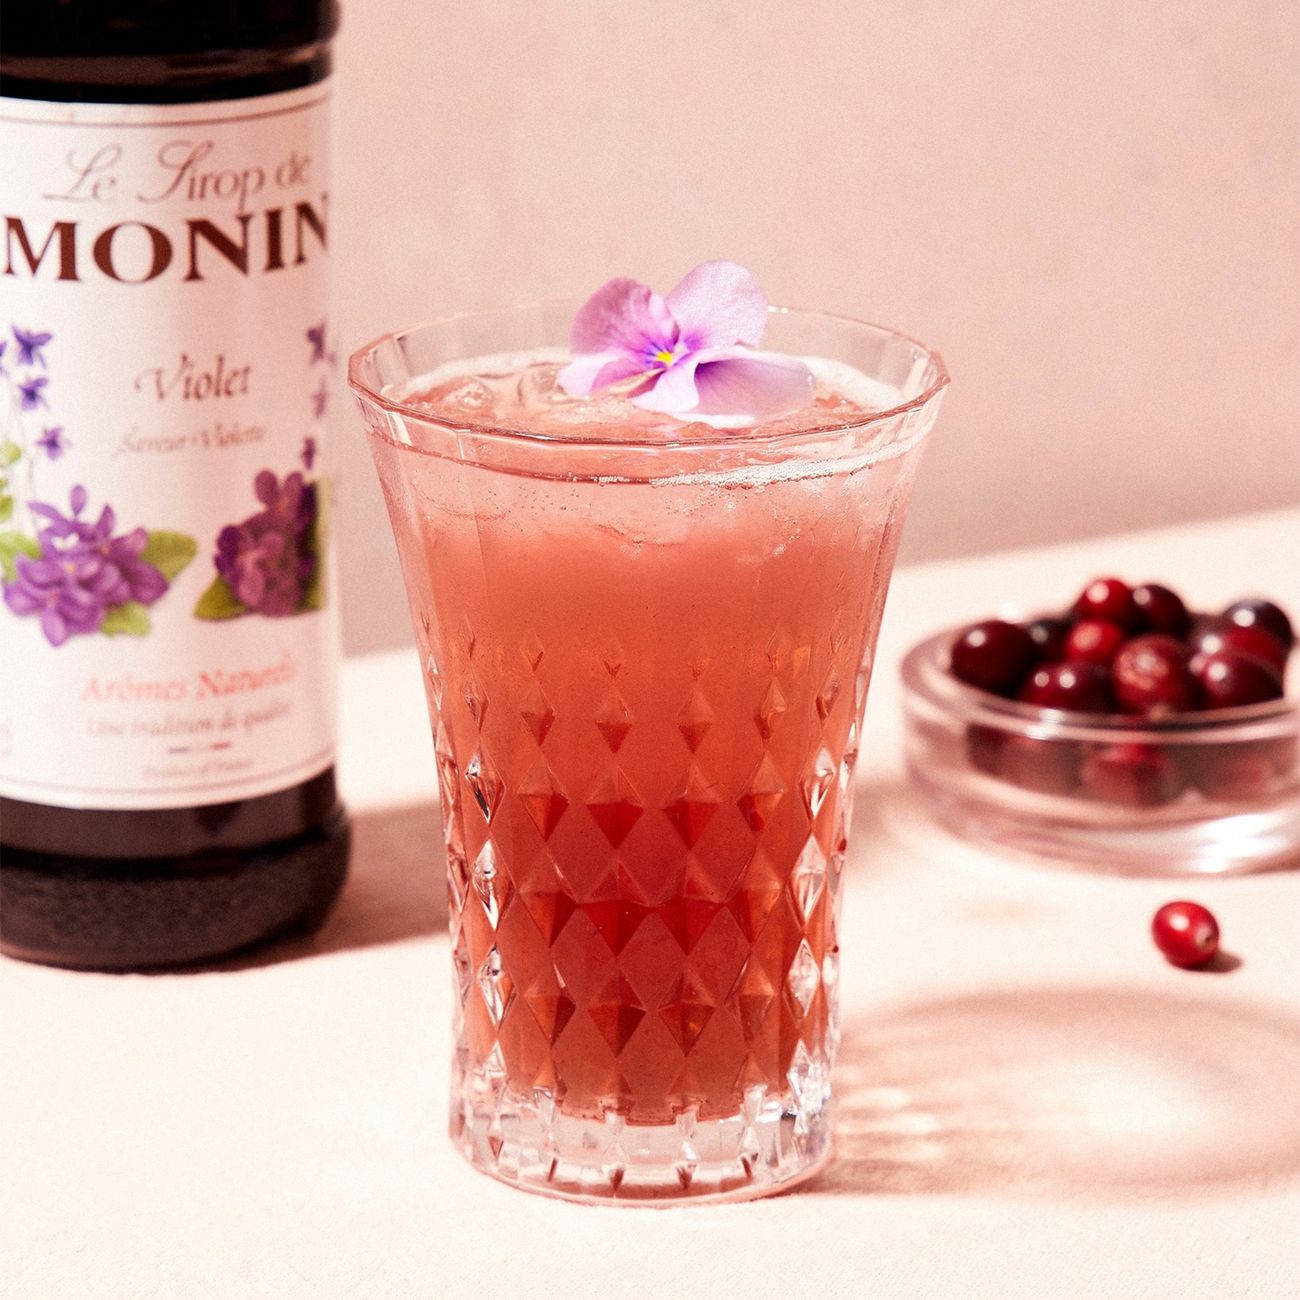 monin-violet-syrup-71351-5